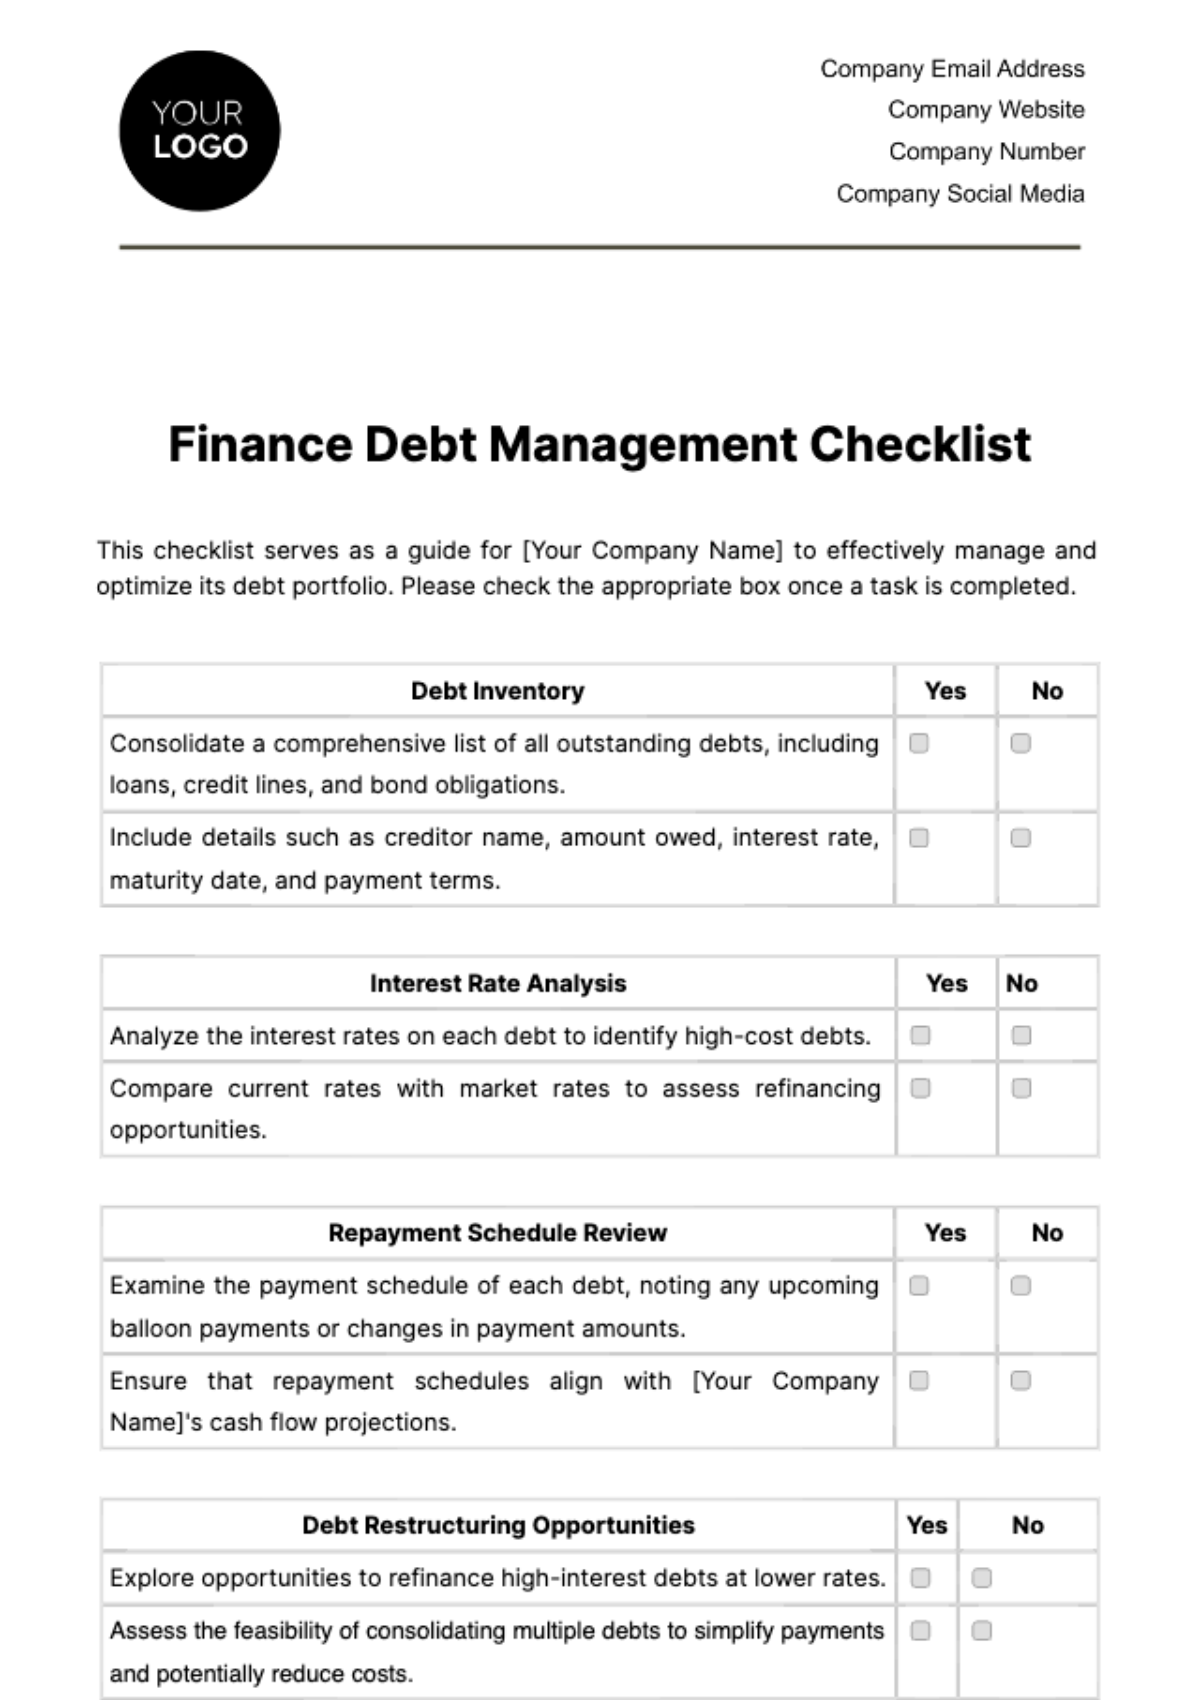 Finance Debt Management Checklist Template